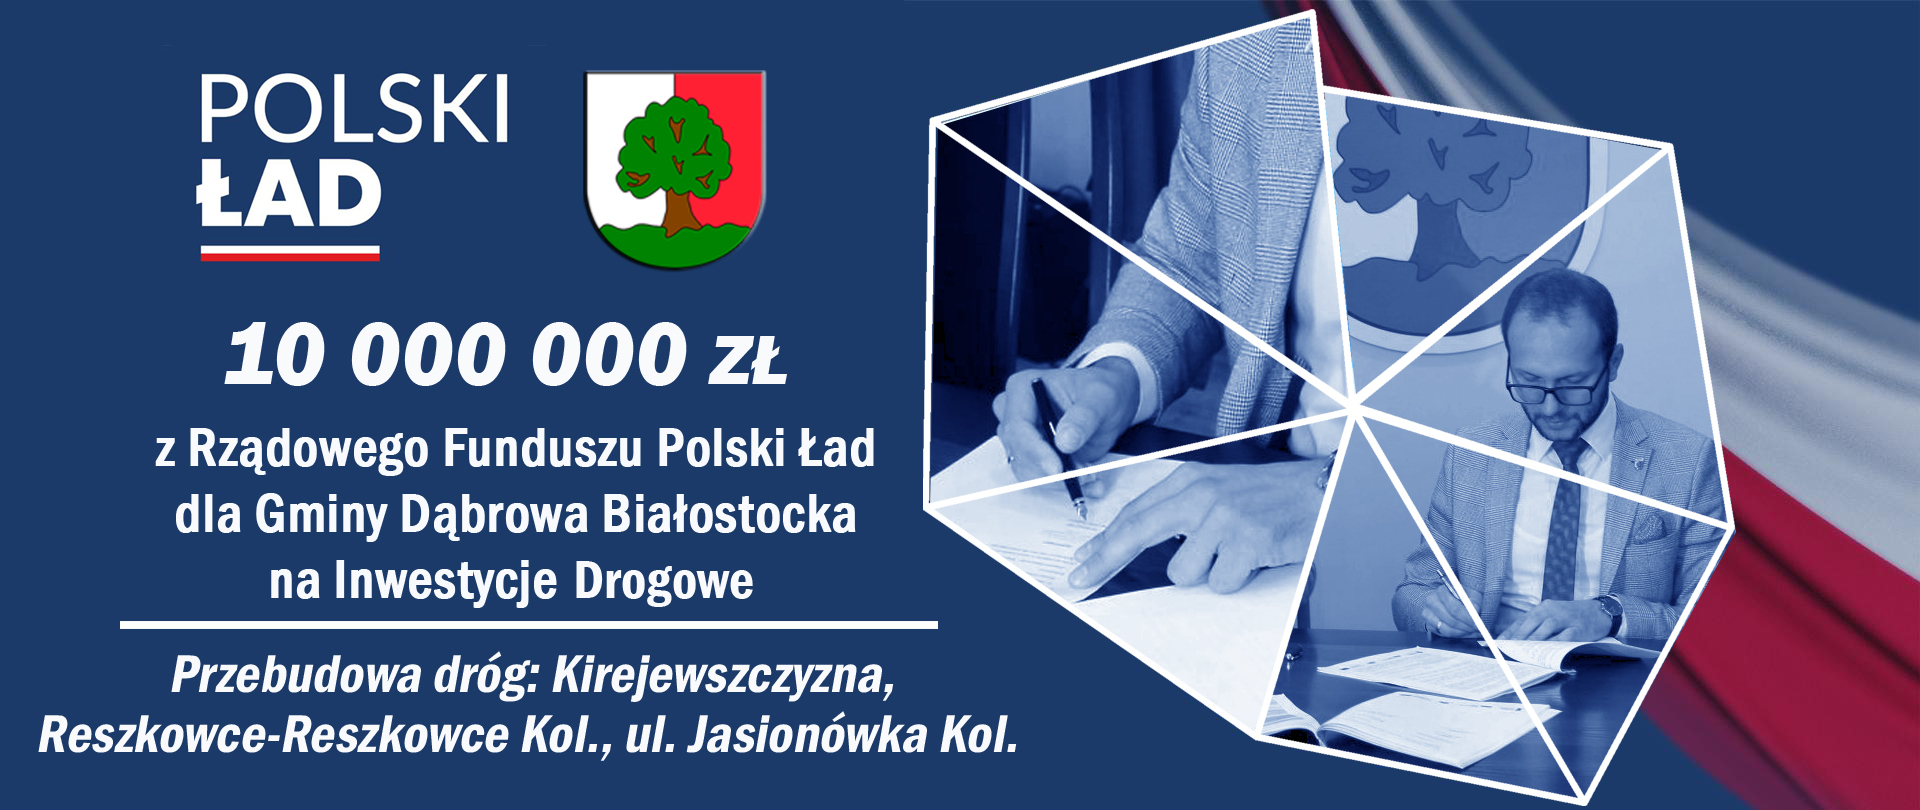 plakat_Polski_Ład_Inwestycje Drogowe